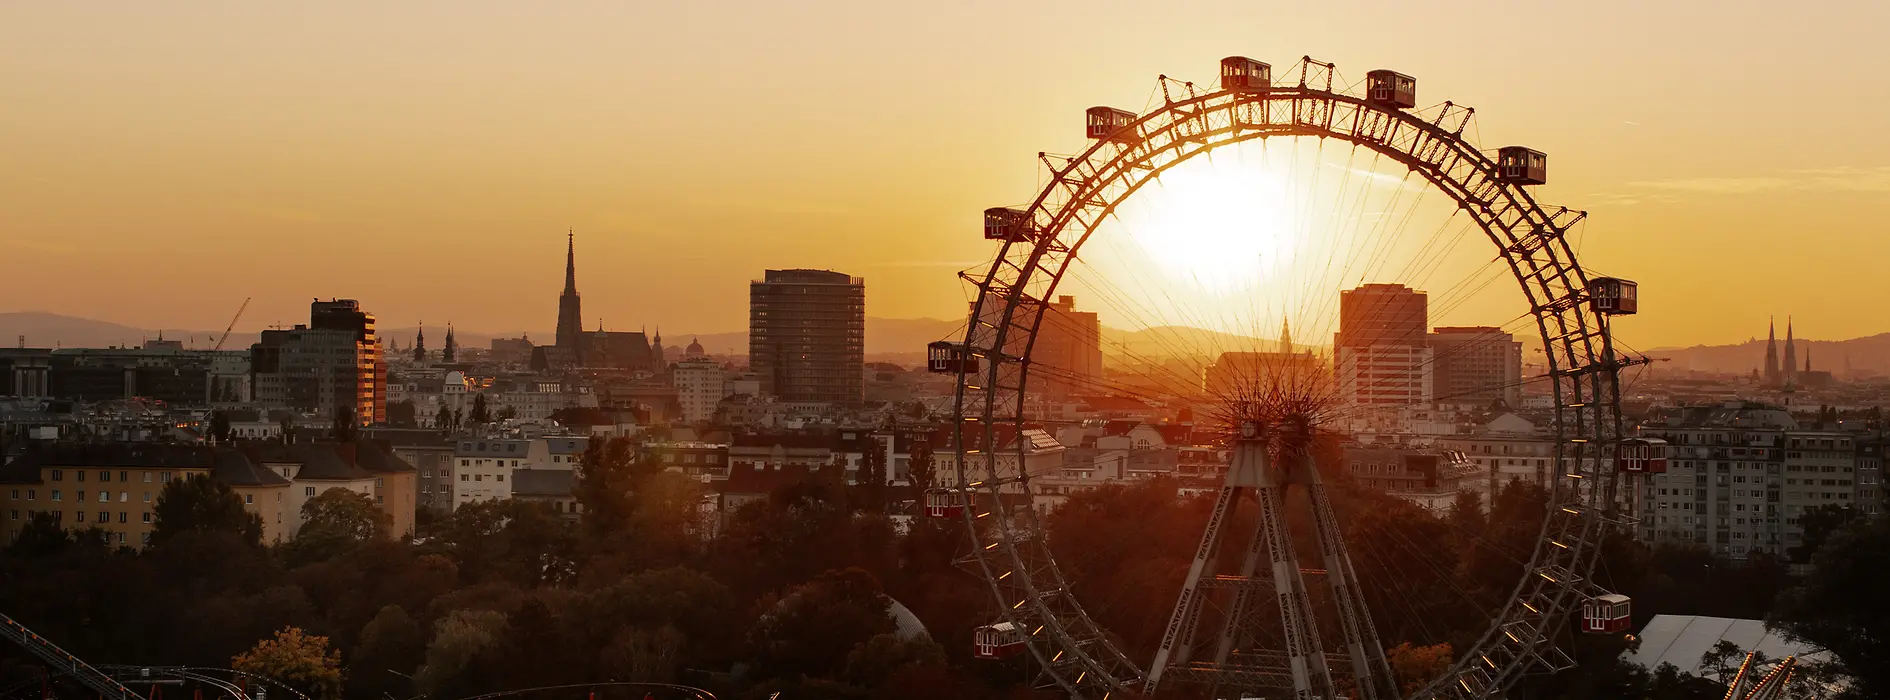 Ruské kolo ve vídeňském Prátru, v pozadí panorama Vídně při západu slunce